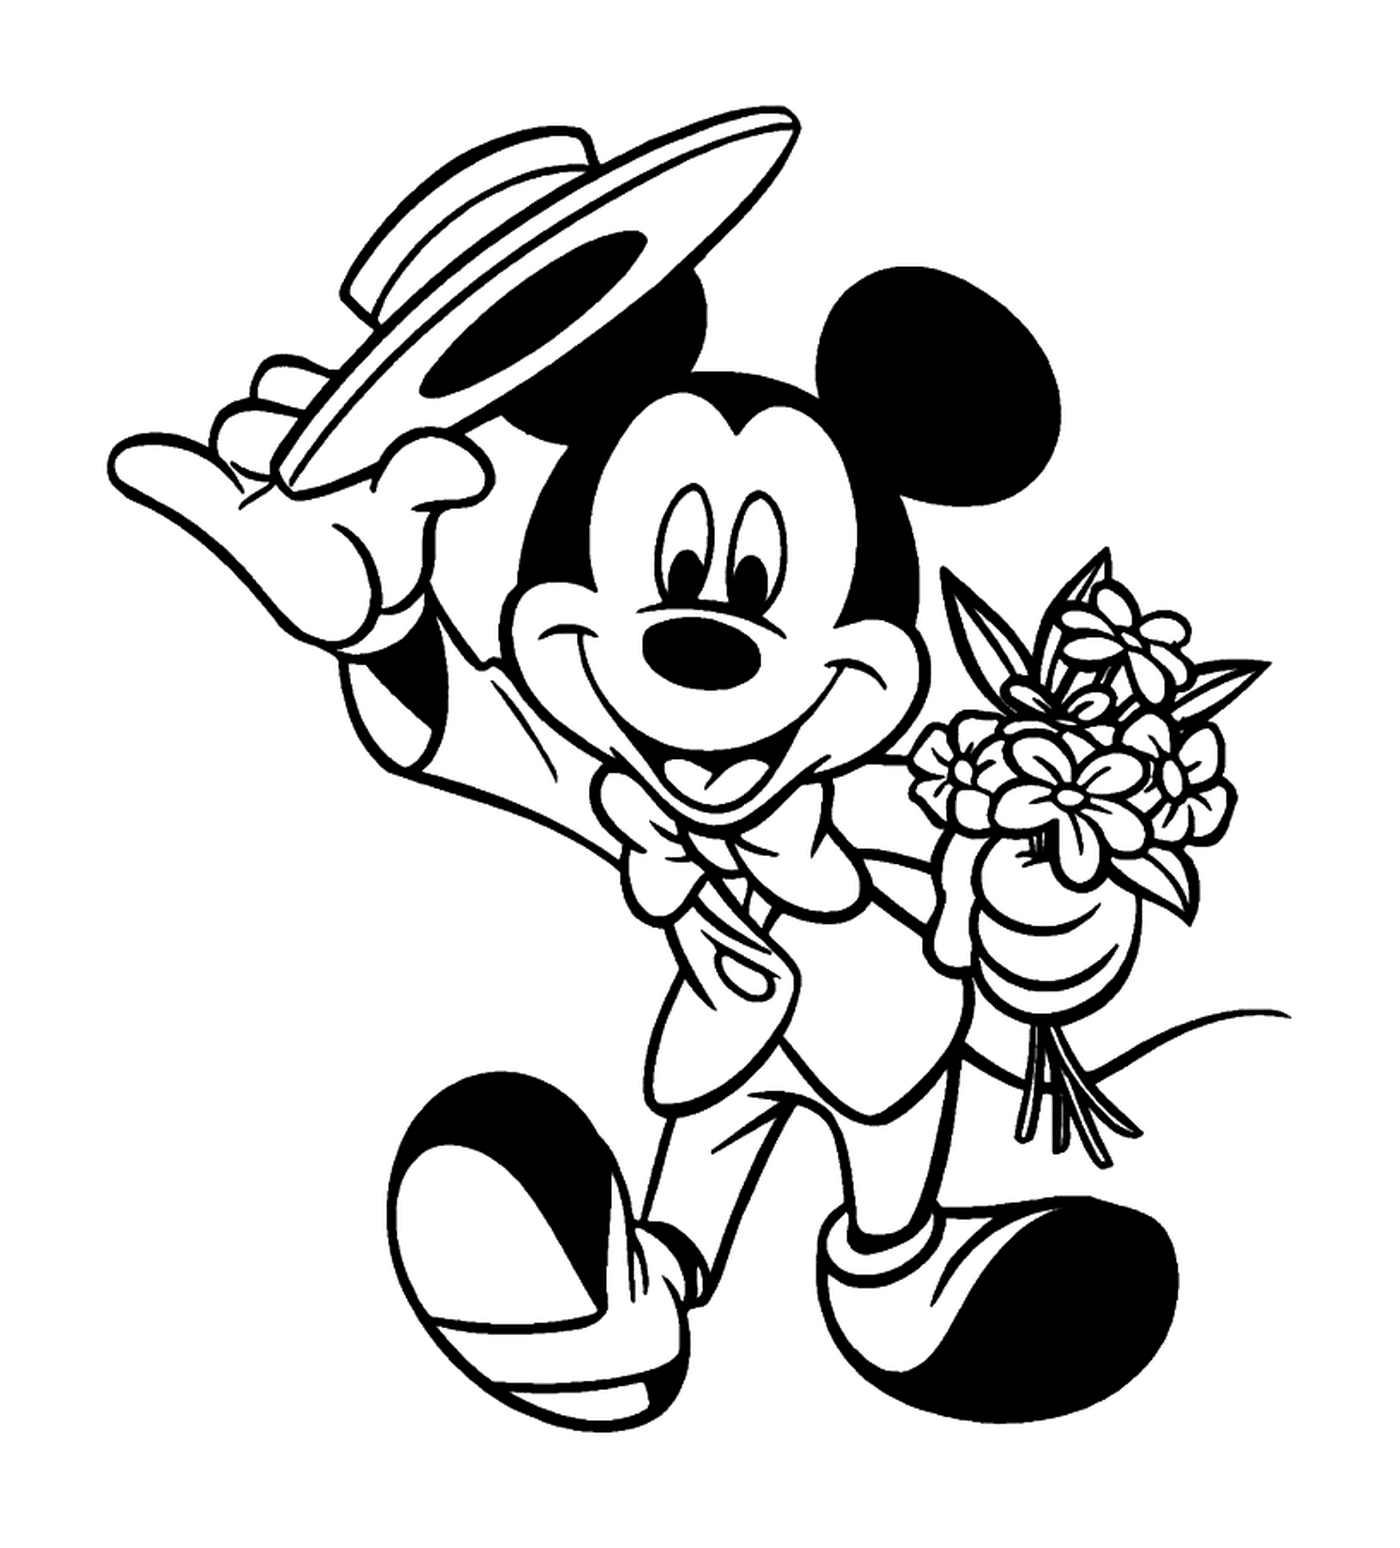  Mickey vai para uma data galante: segurando um buquê 